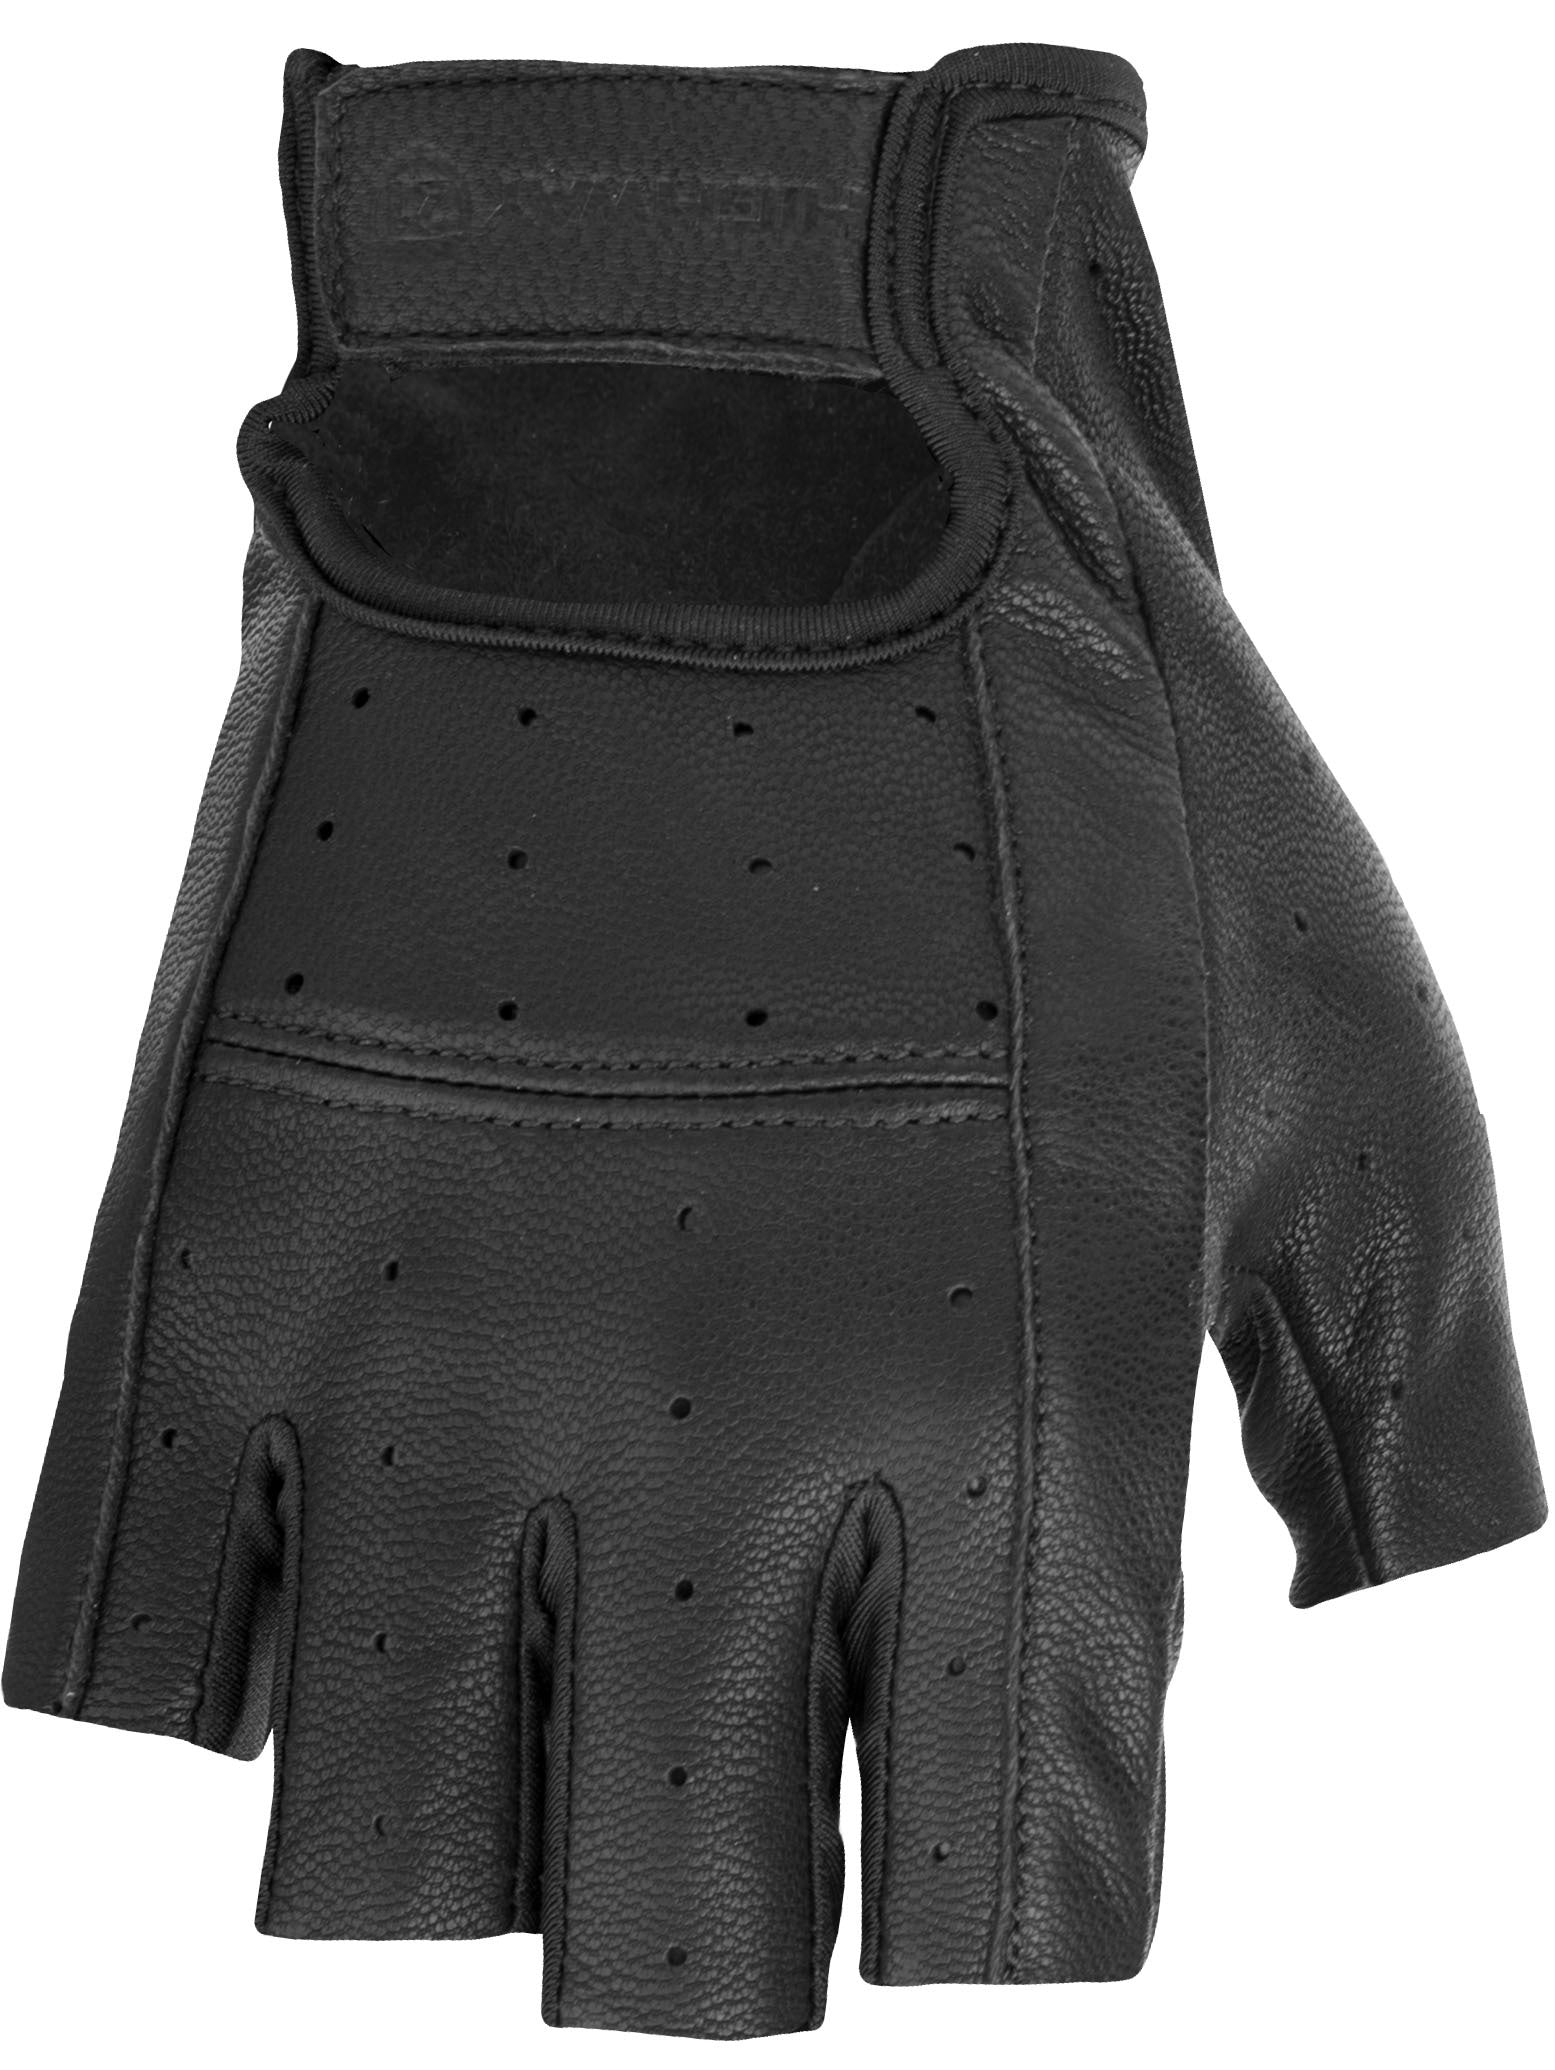 Ranger Gloves Black 2x